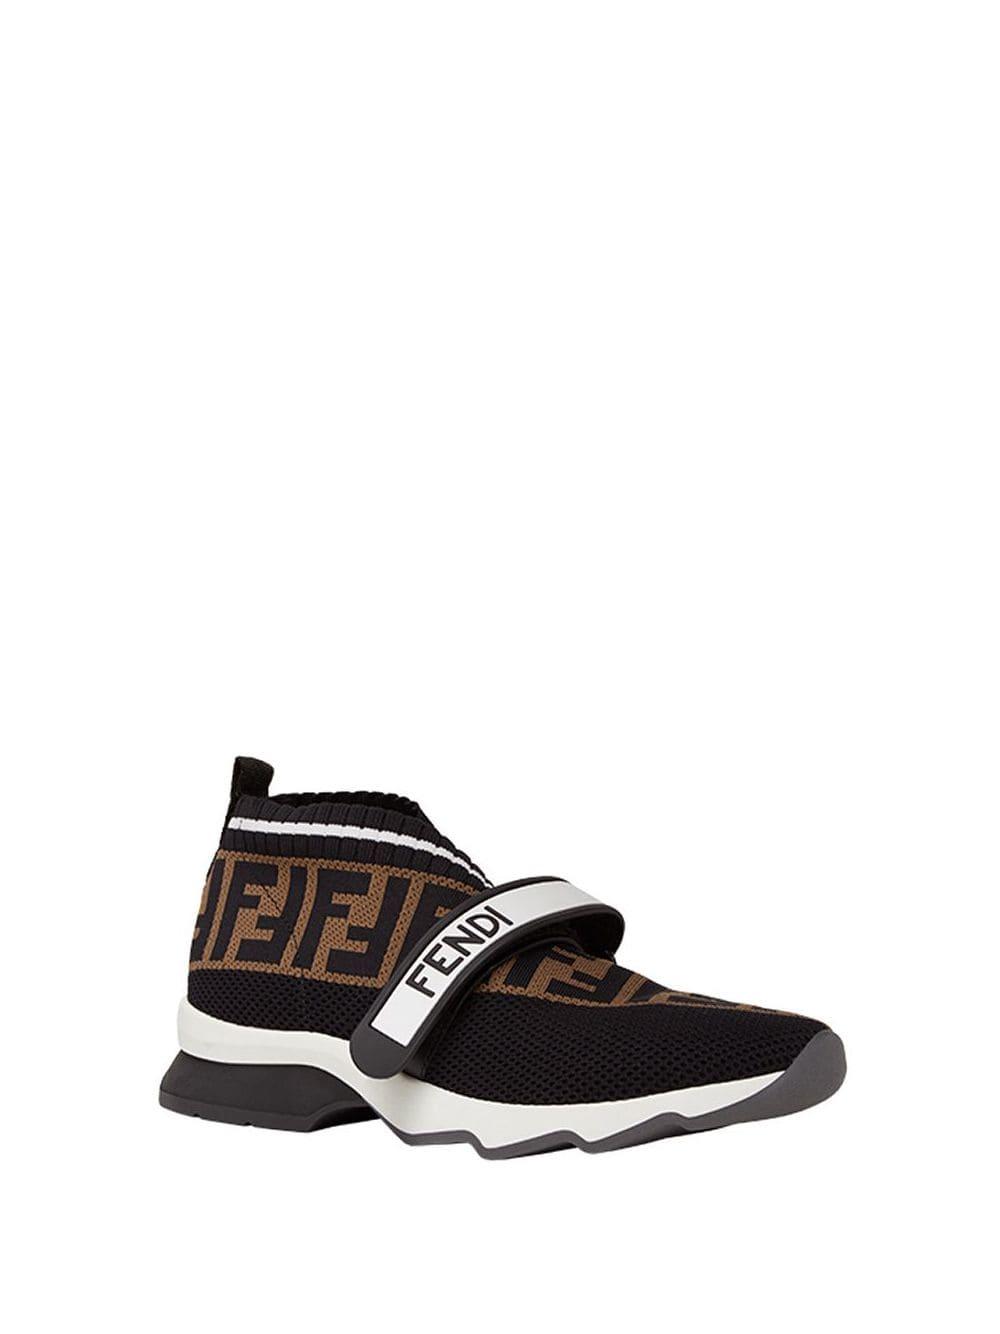 Fendi Rubber Rockoko Knit Sneakers in Black - Lyst